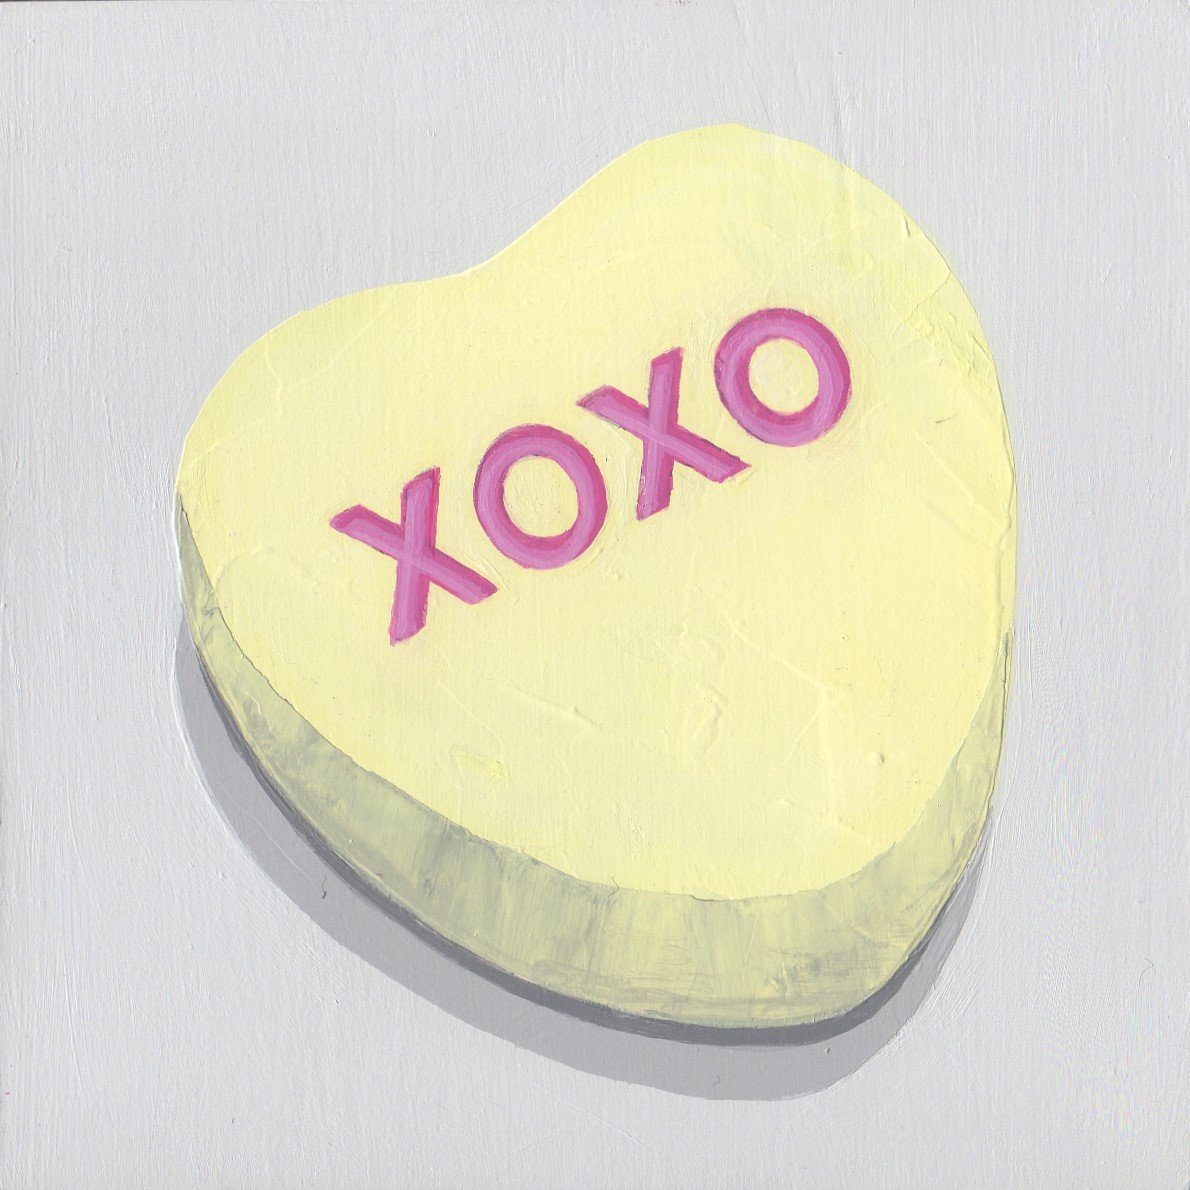 Conversation Heart Single XOXO banana by Nicci SevierVuyk.jpg